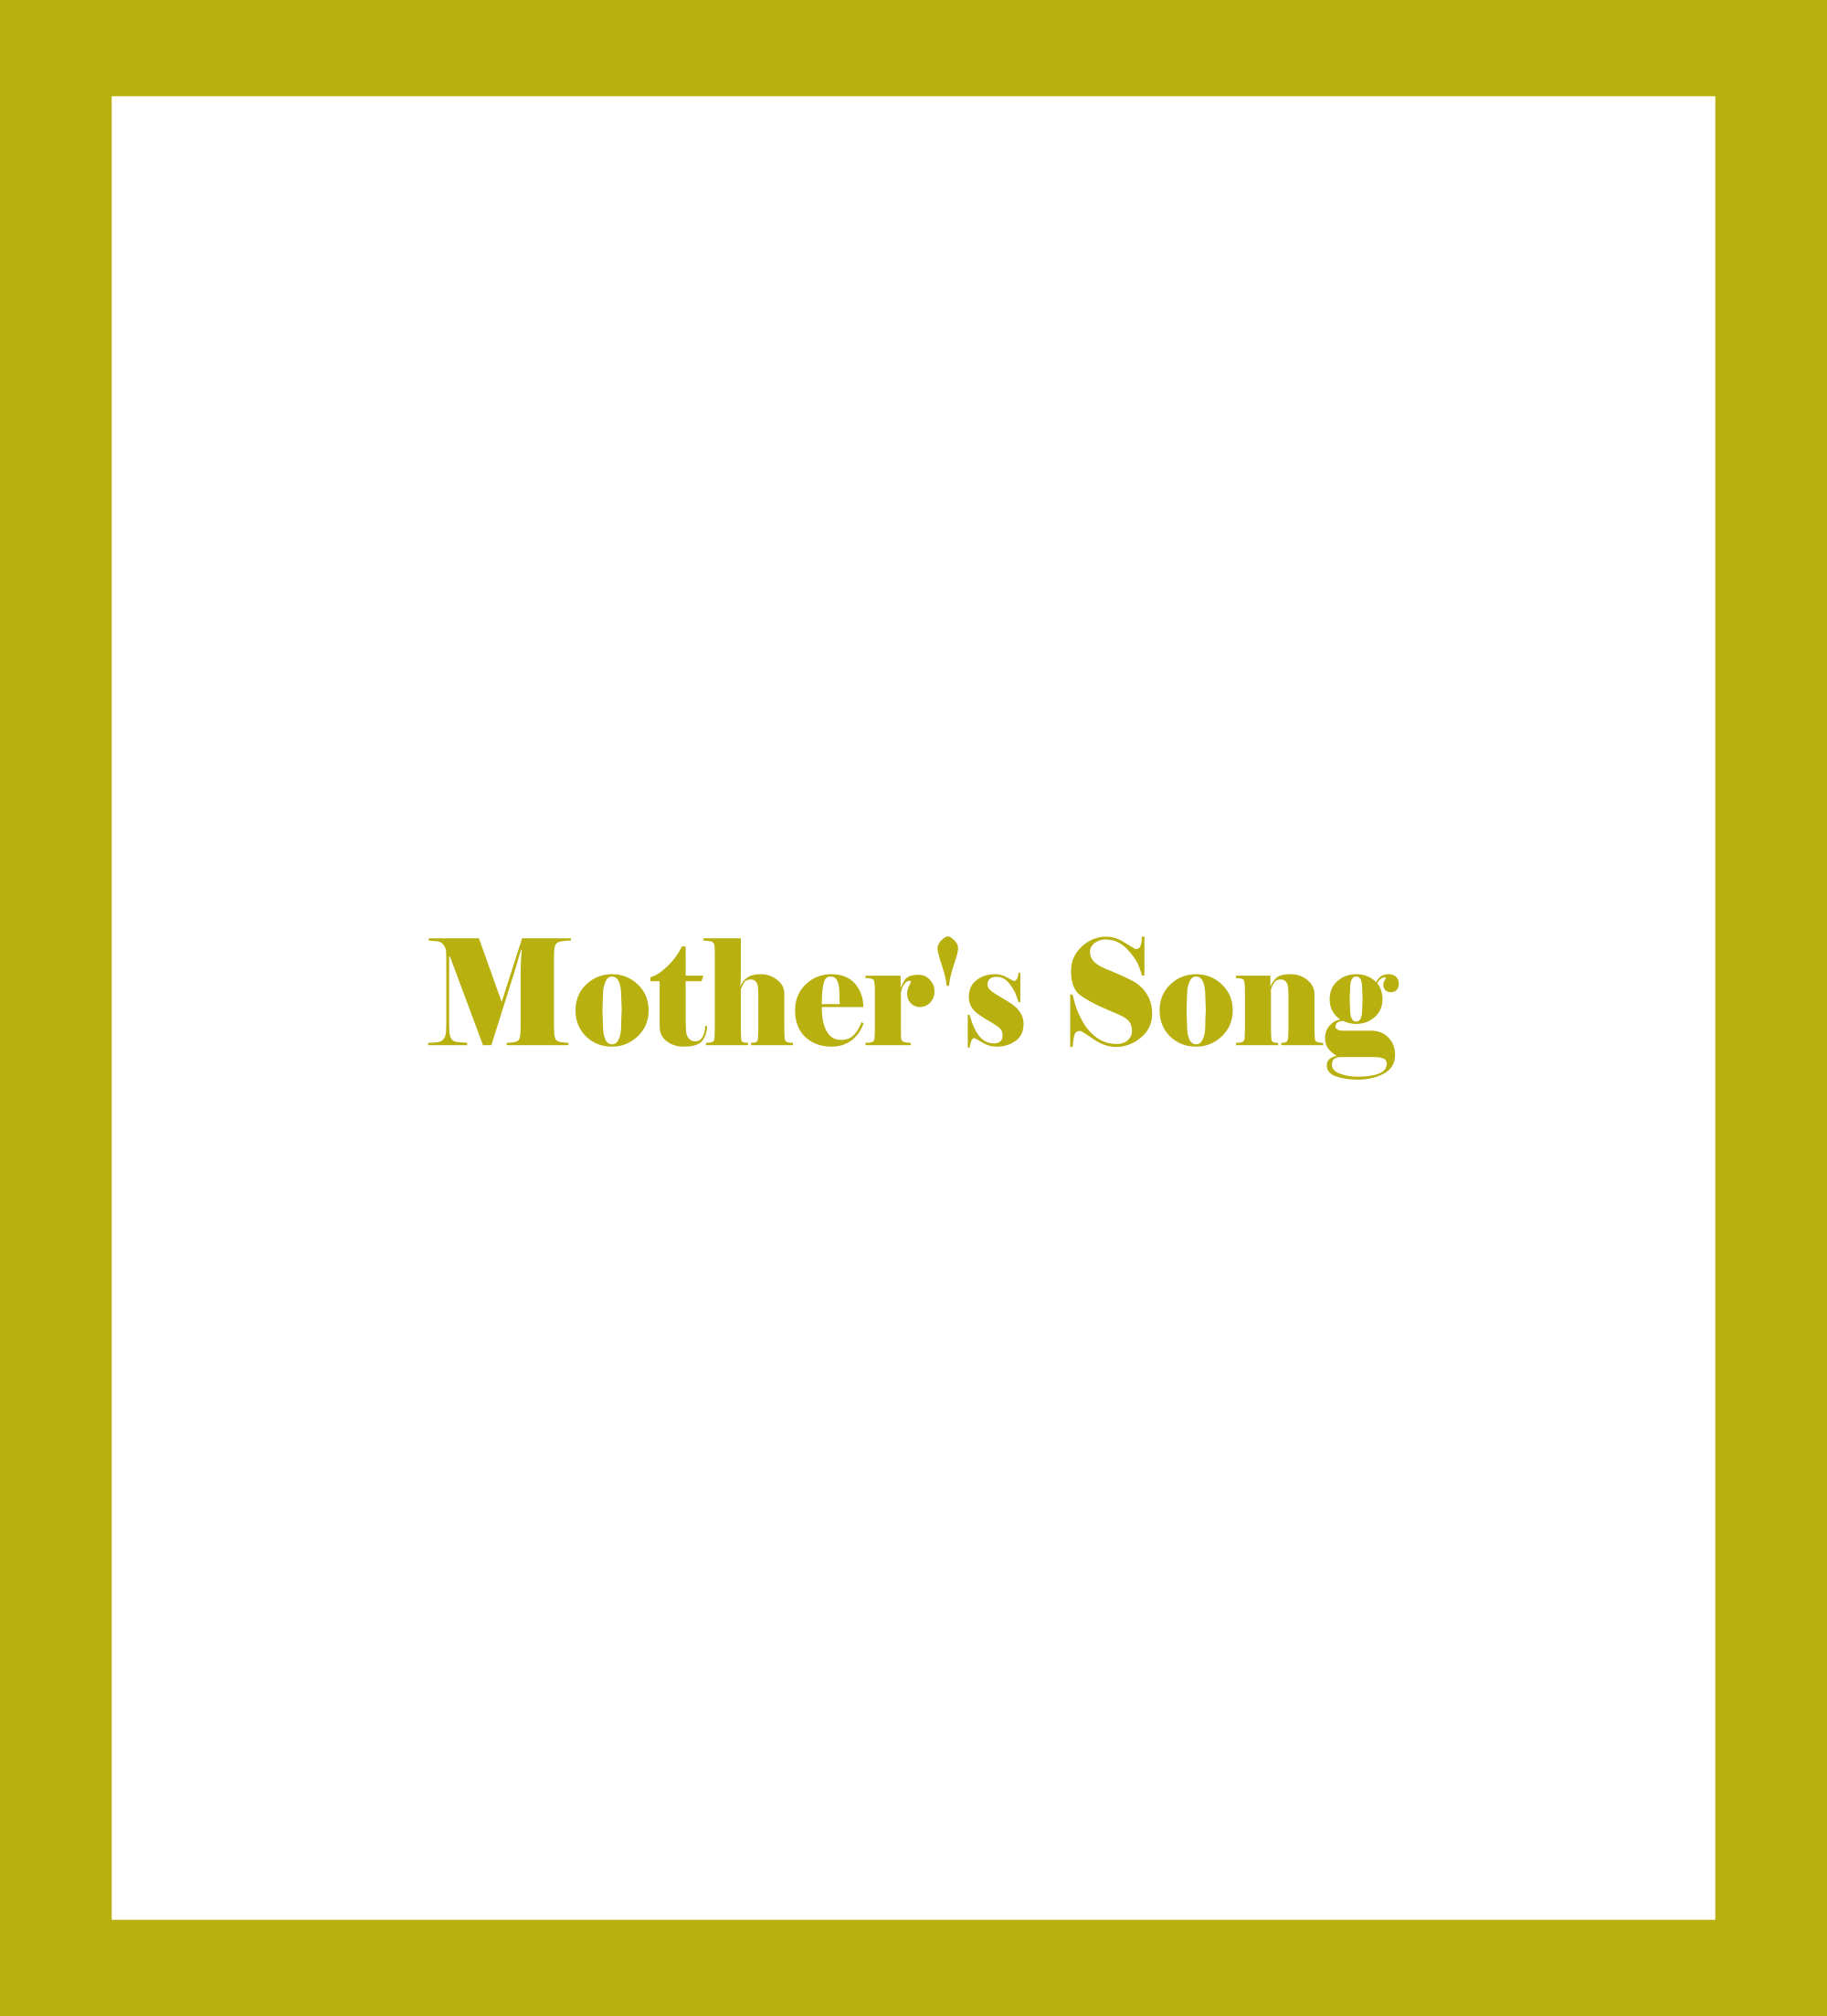 Caratula de Mother's Song (Mother's Song) 